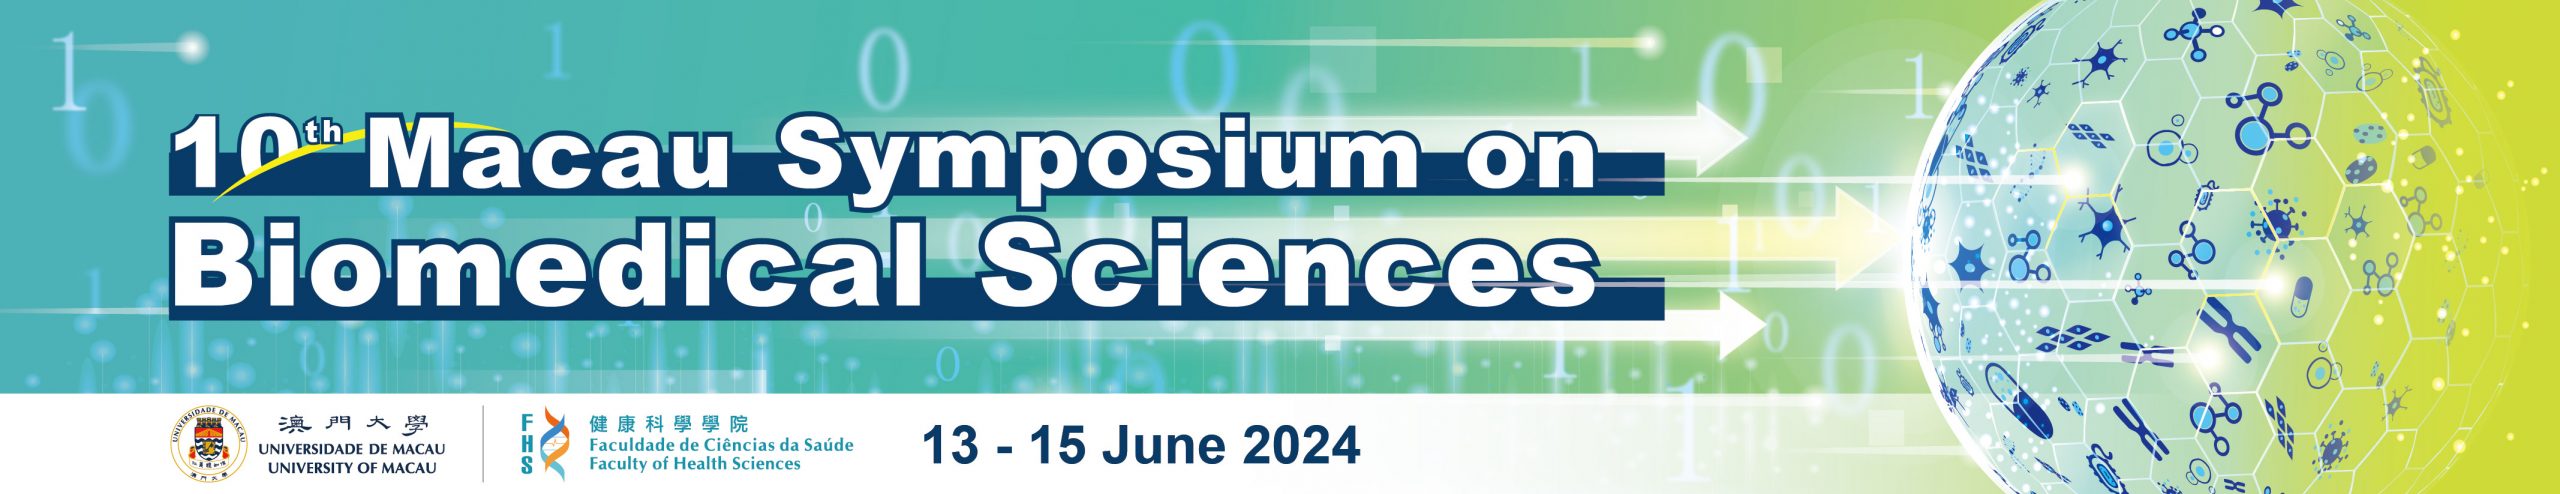 10th Macau Symposium on Biomedical Sciences 2023 Logo